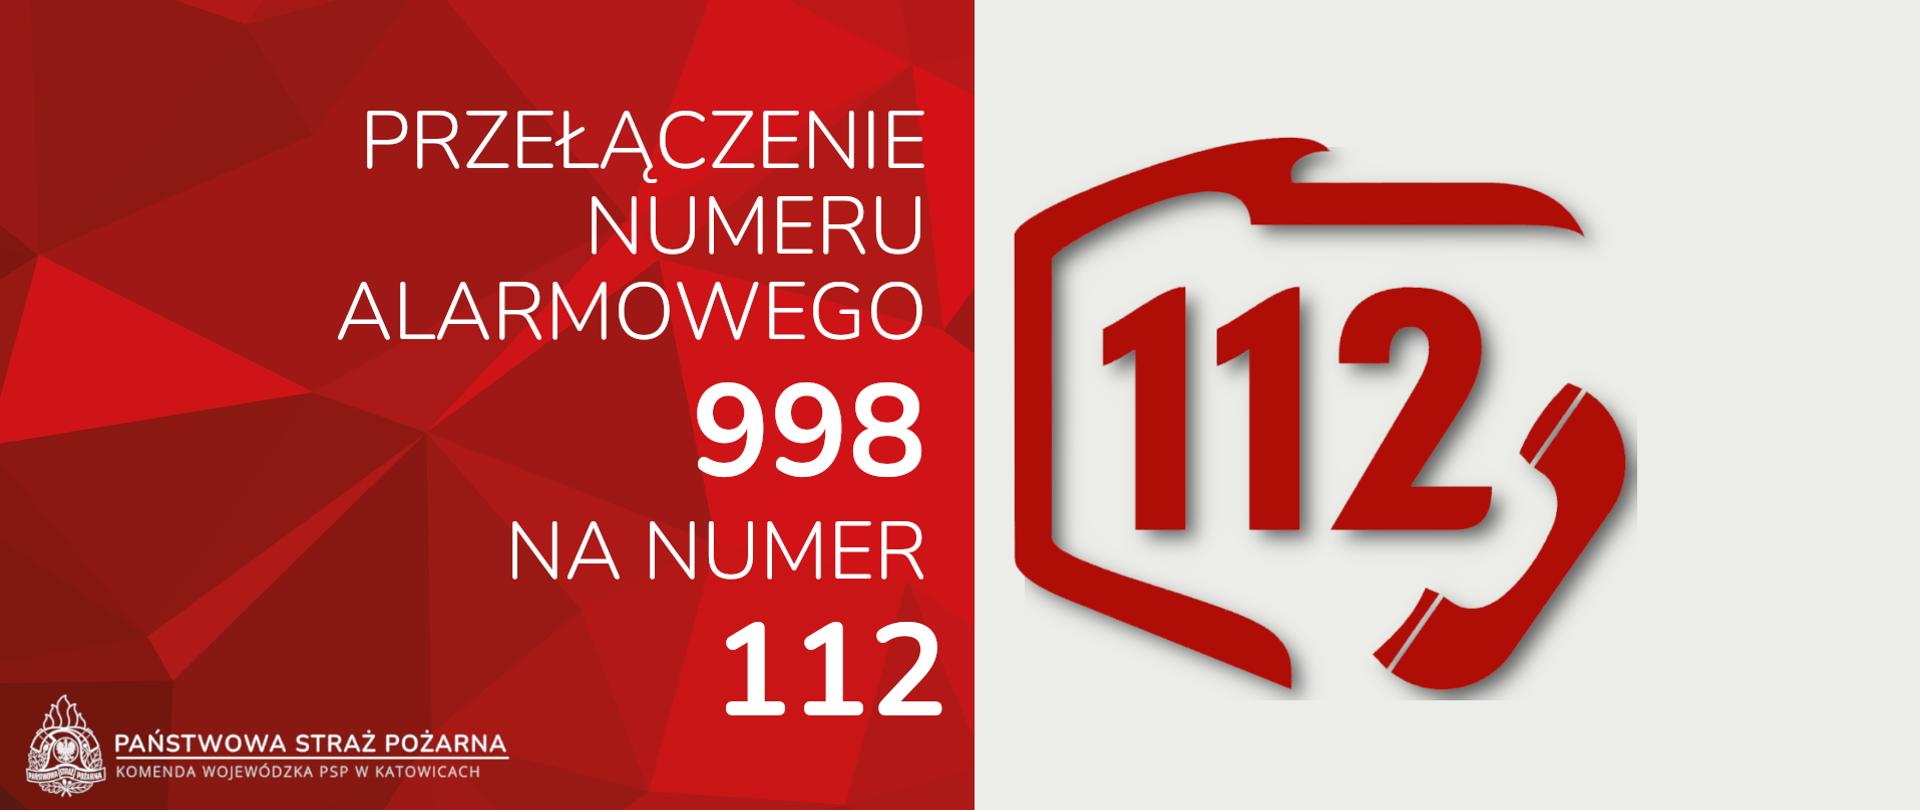 czerwono biały baner przedstawiający informację o przełączeniu numeru alarmowego 998 na 112